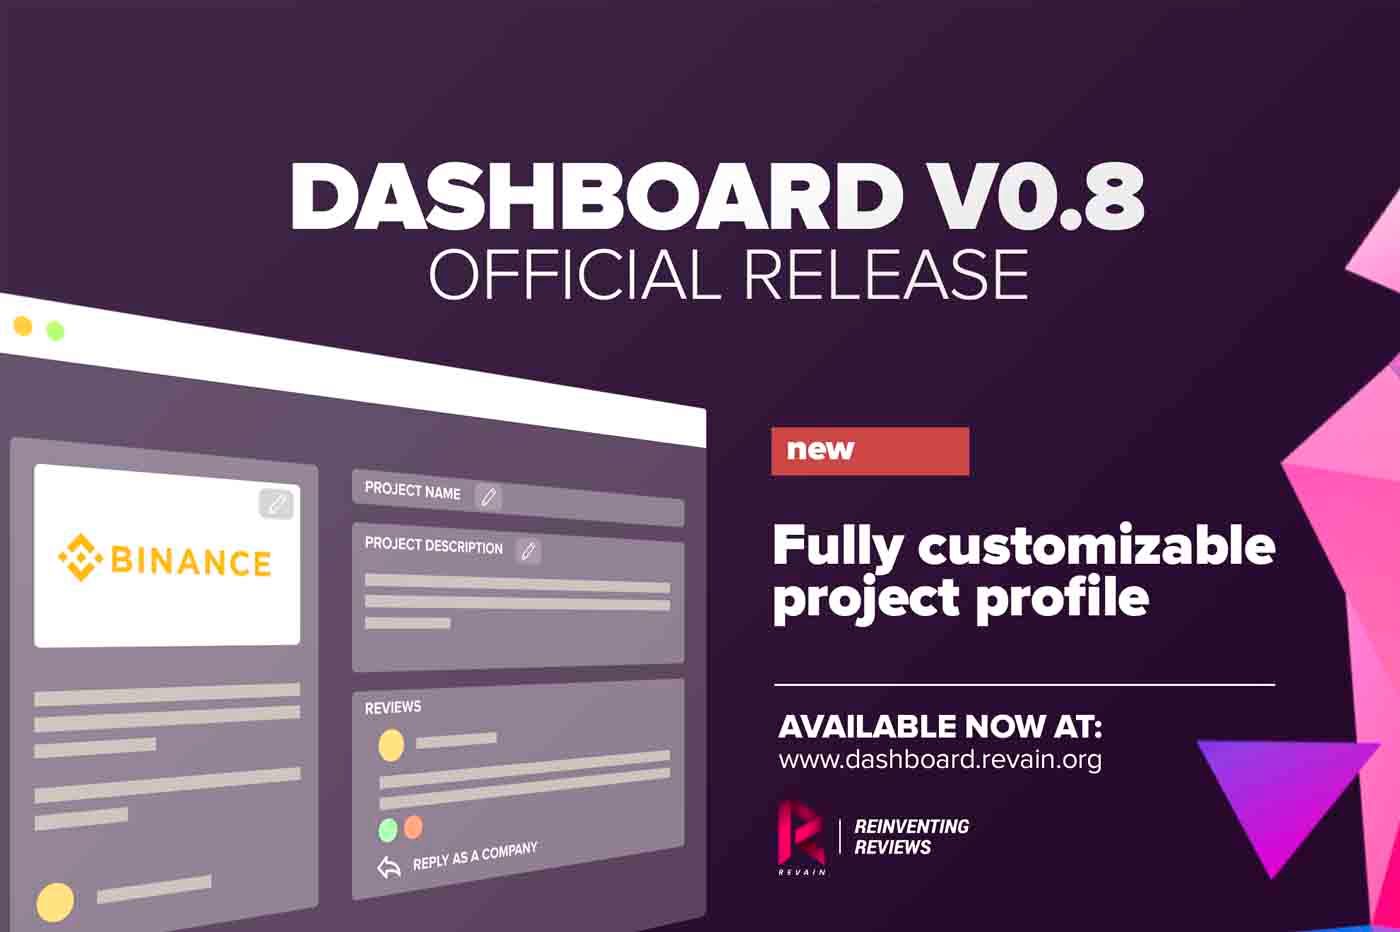 Article Revain Dashboard версии 0.8 уже здесь. Корпоративные аккаунты выходят из бета-версии